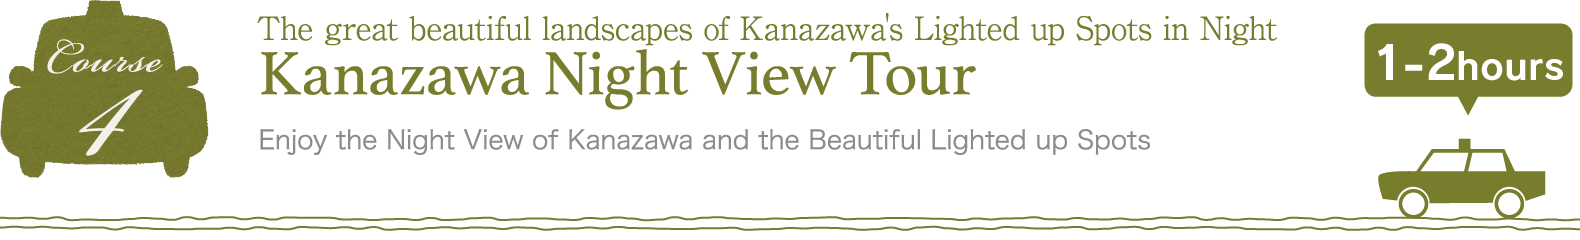 Kanazawa Night View Tour